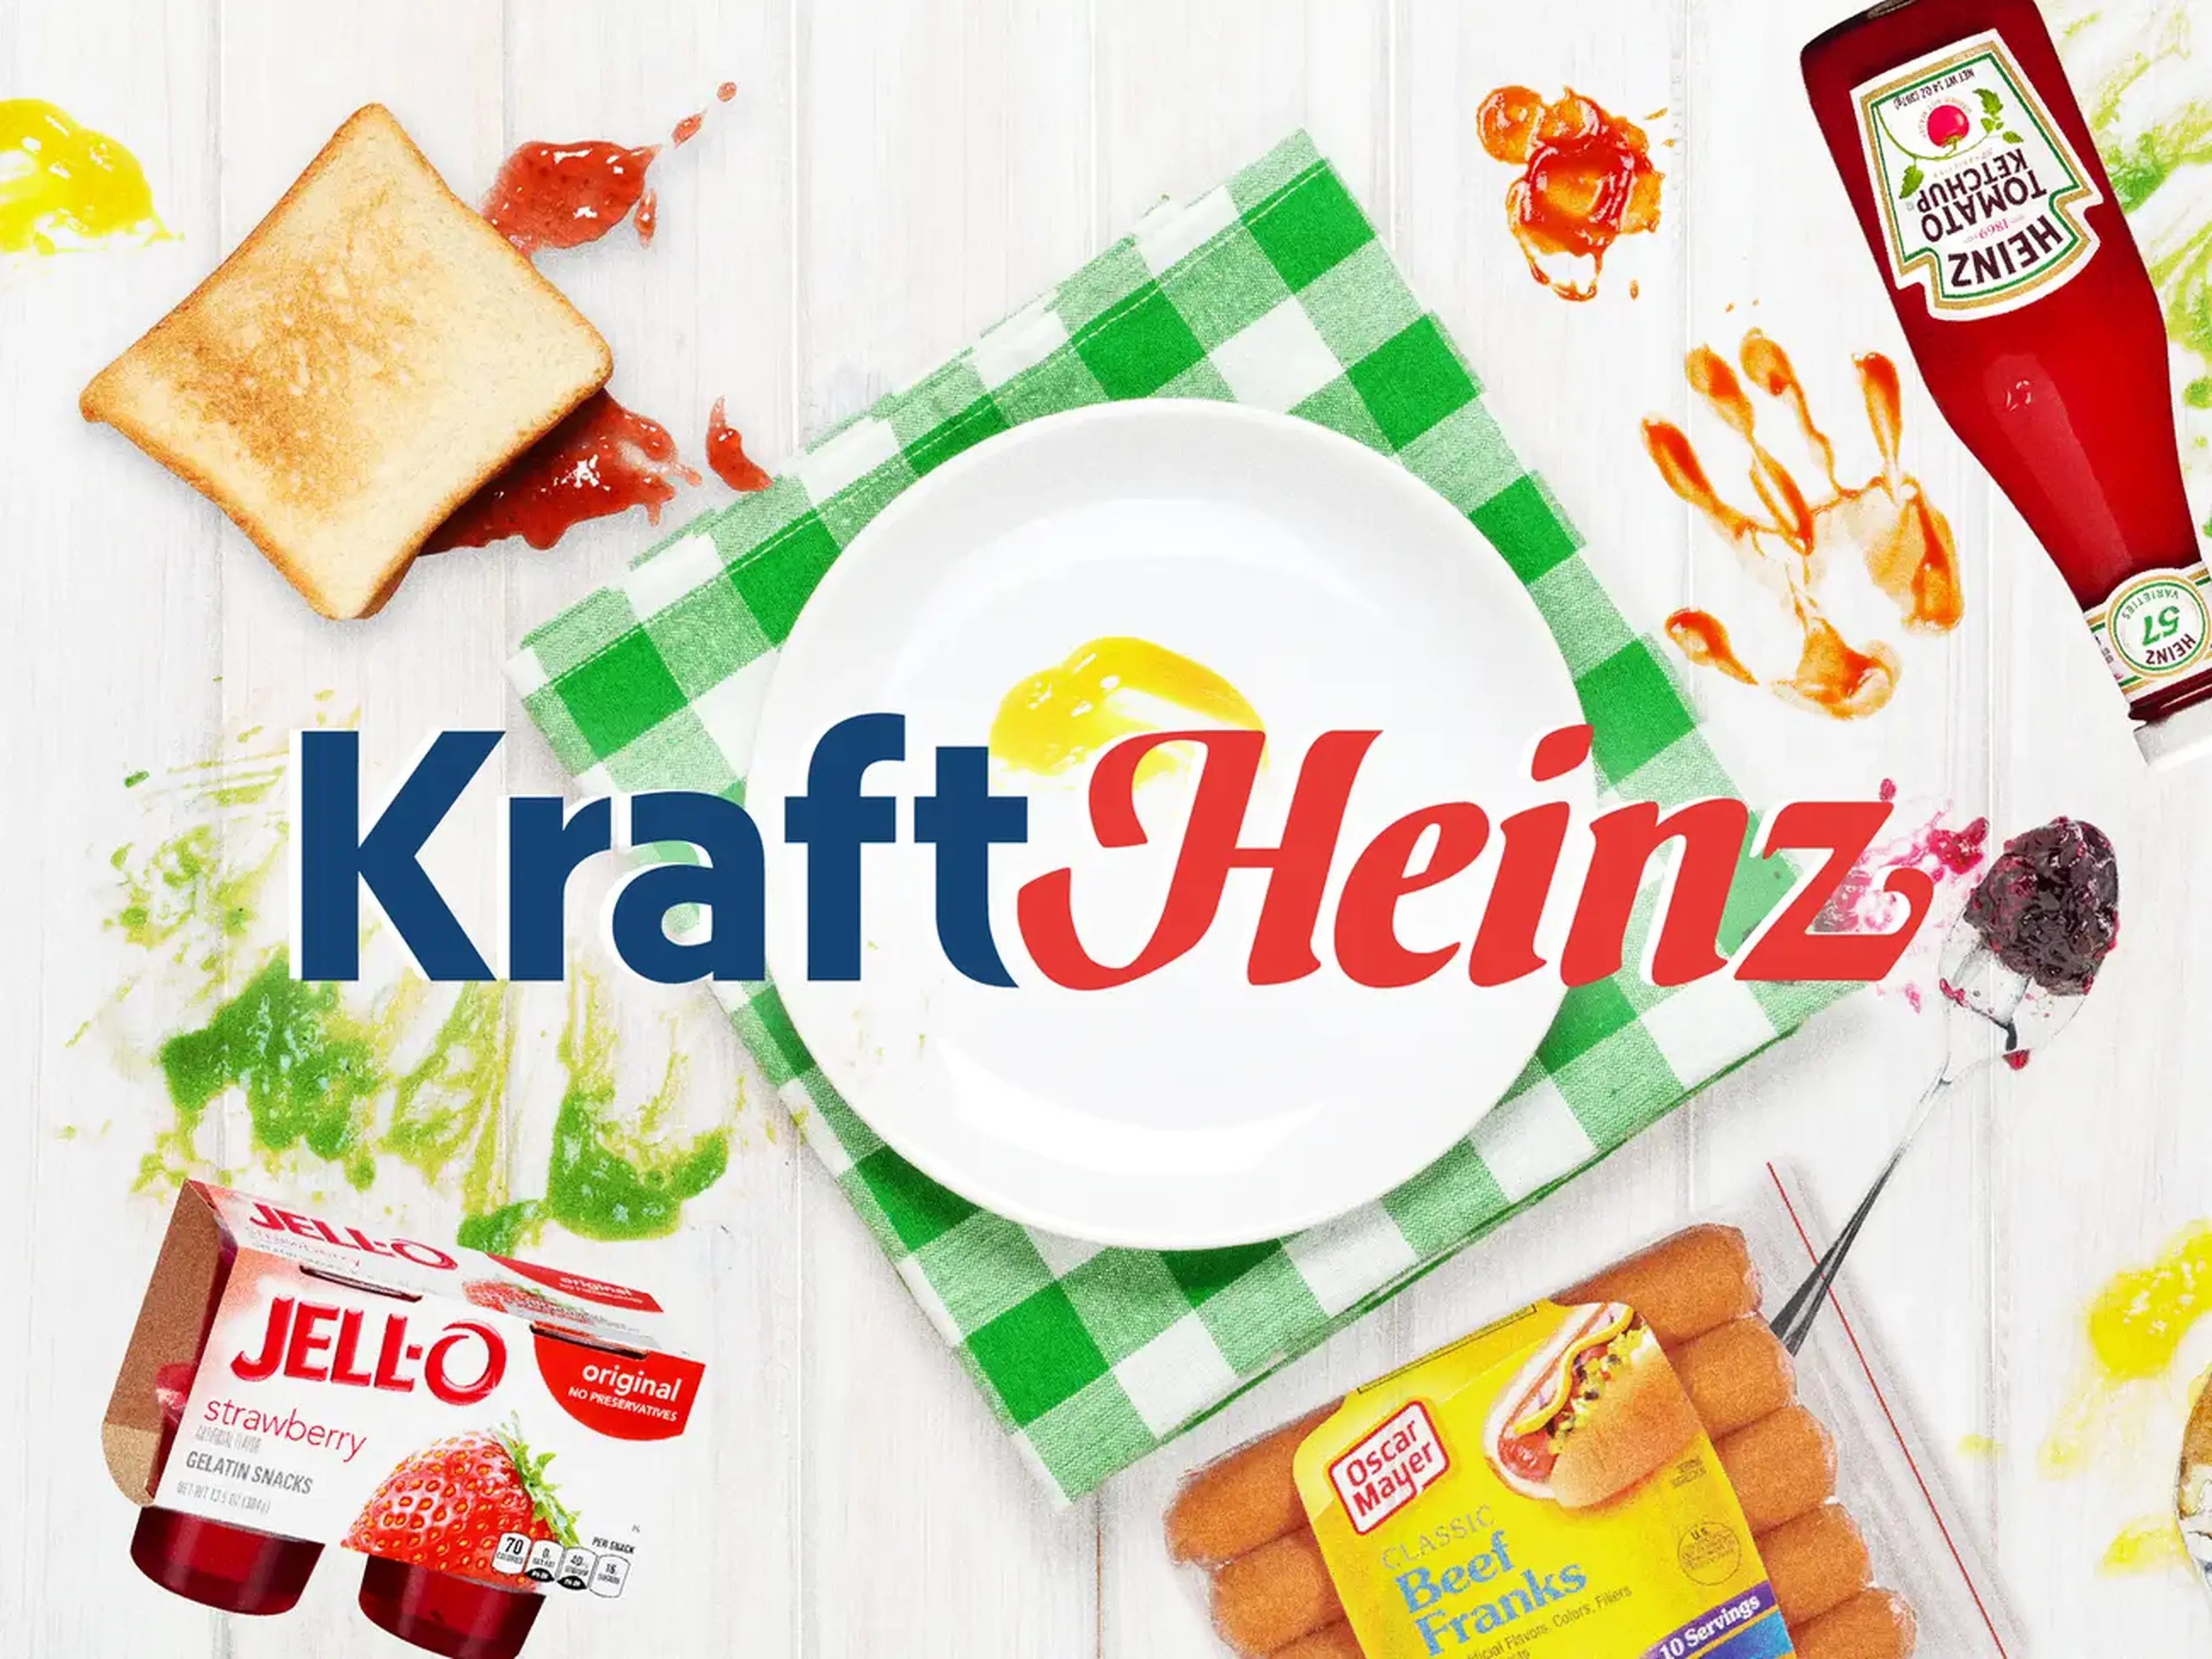 Un collage con productos de Heinz